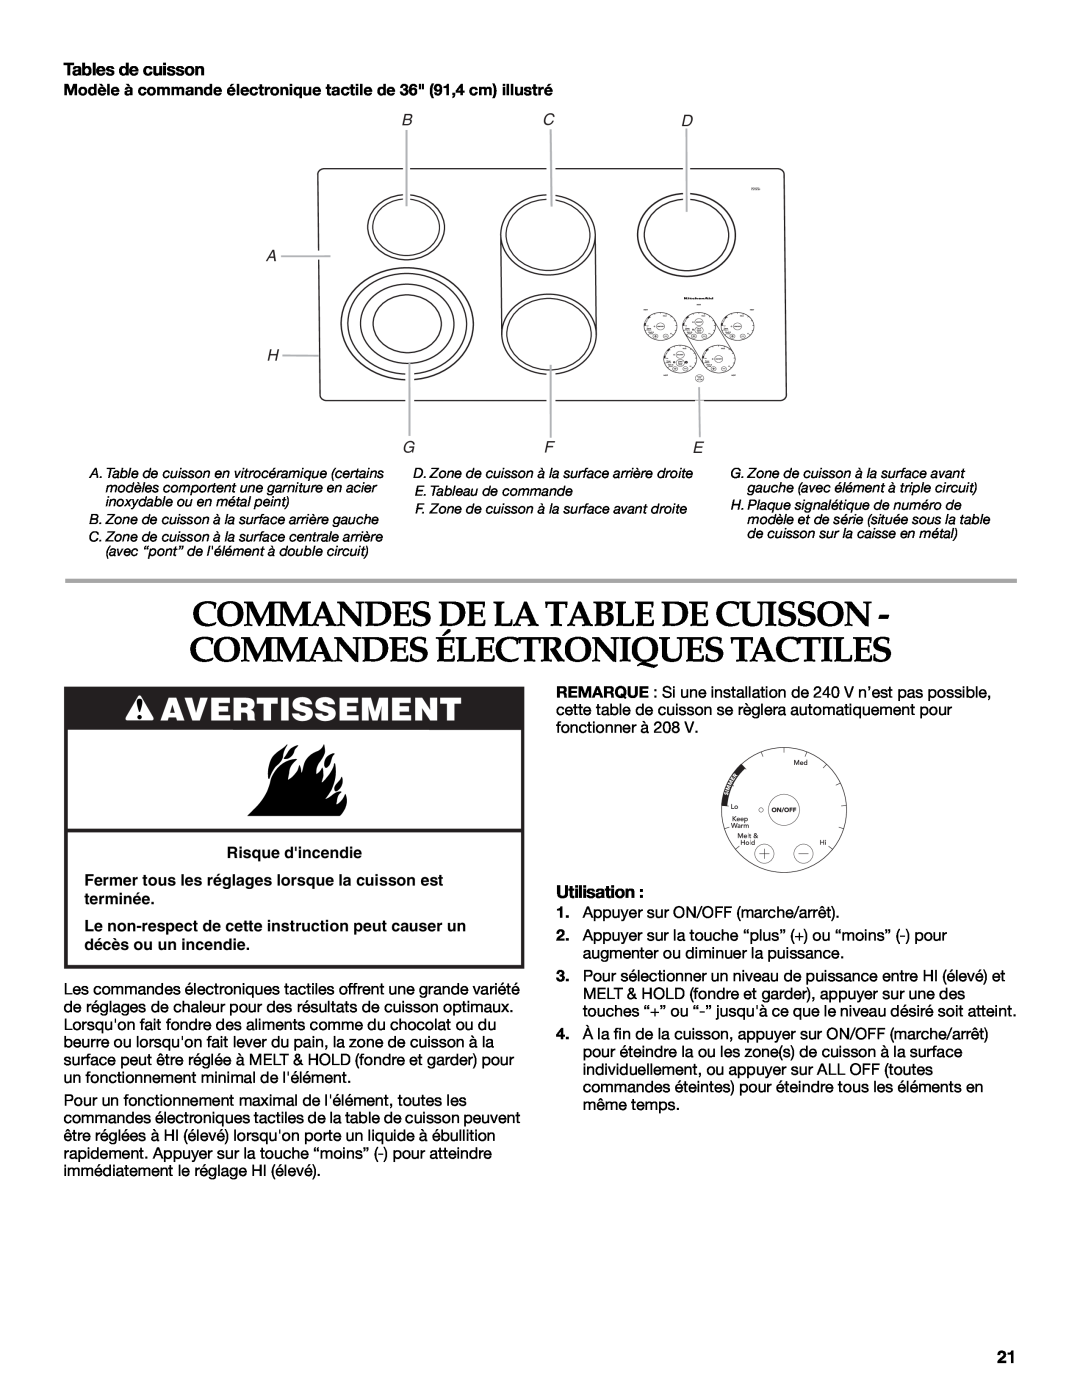 KitchenAid KECC507 Commandes De La Table De Cuisson - Commandes Électroniques Tactiles, Avertissement, Tables de cuisson 